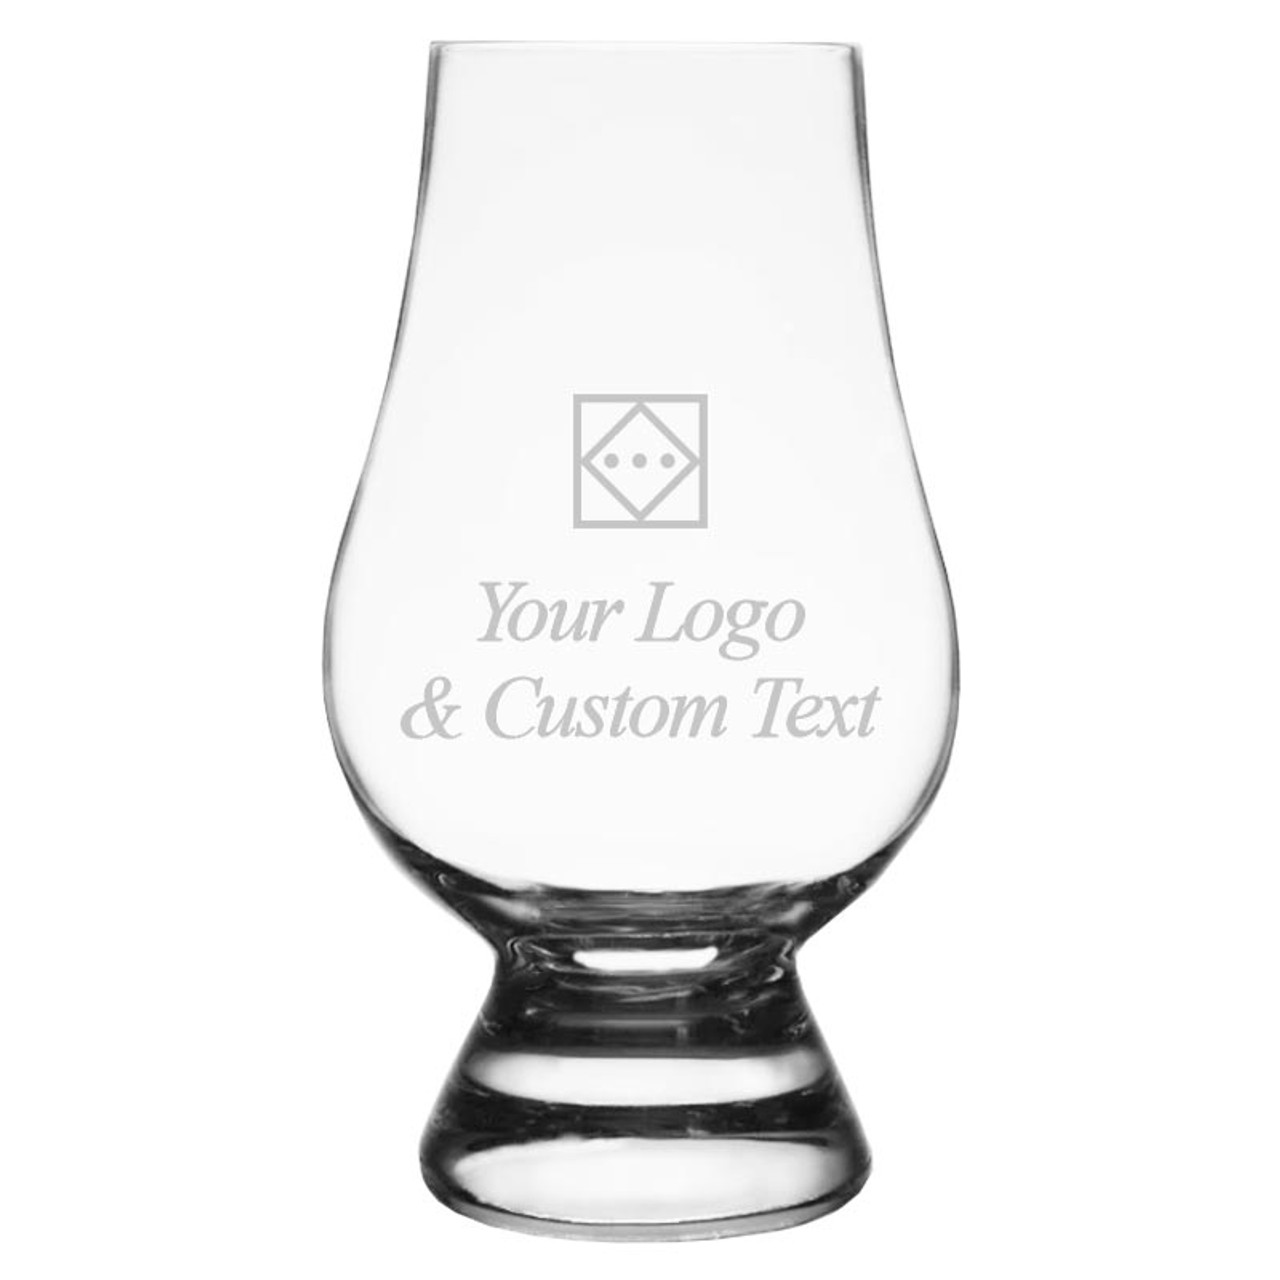 Buy Embossed Diamond Whisky Glasses Set - Enhance Flavors